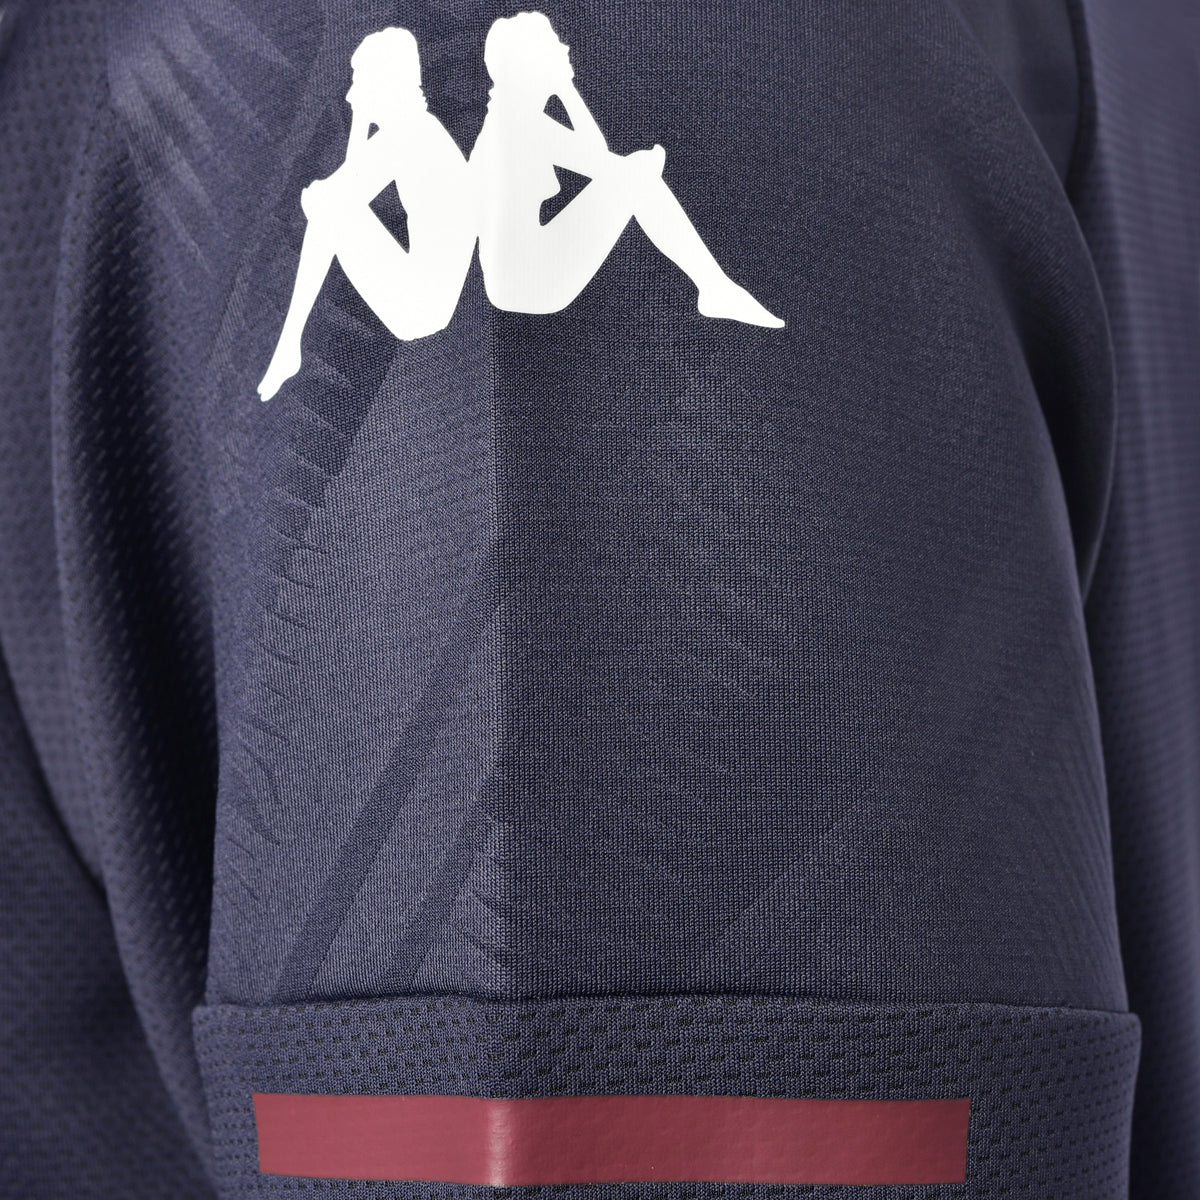 Sweatshirt Ablas Pro 4 Ubb Rugby Bleu Homme - image 3